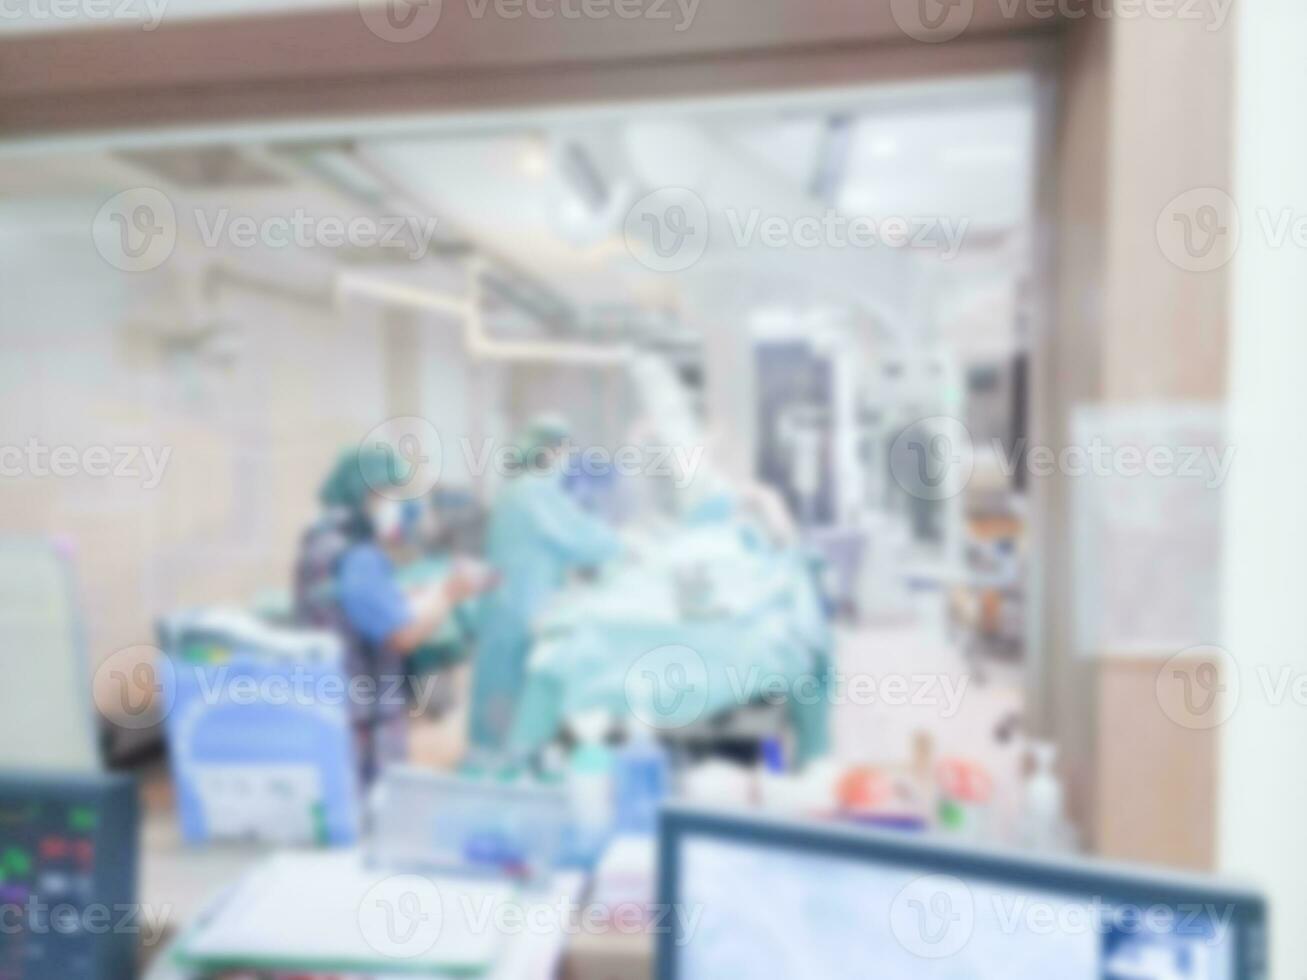 un paciente es hospitalizado y el imagen es borroso. foto